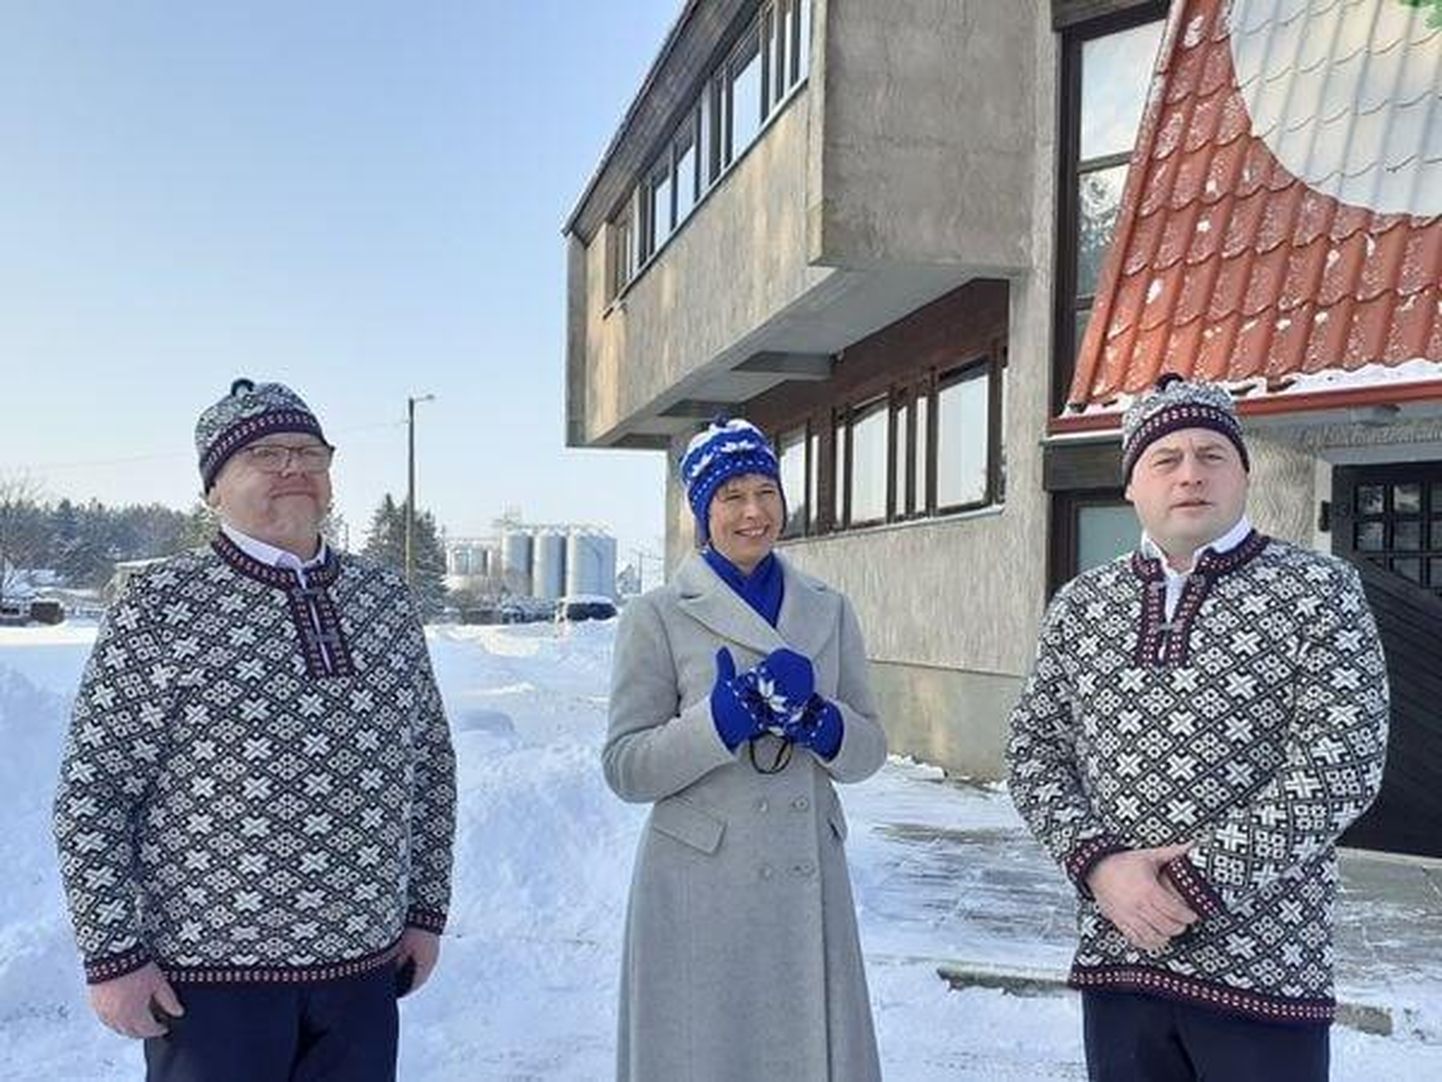 Kersti Kaljulaidi garderoobi kaunistavad veebruarist rahvusvärvides ja rahvuslike motiividega Lõnga Liisu müts, sall ja kindad. Vinni valla juhid kinkisid need presidendile tema ringreisil Lääne-Virumaal.